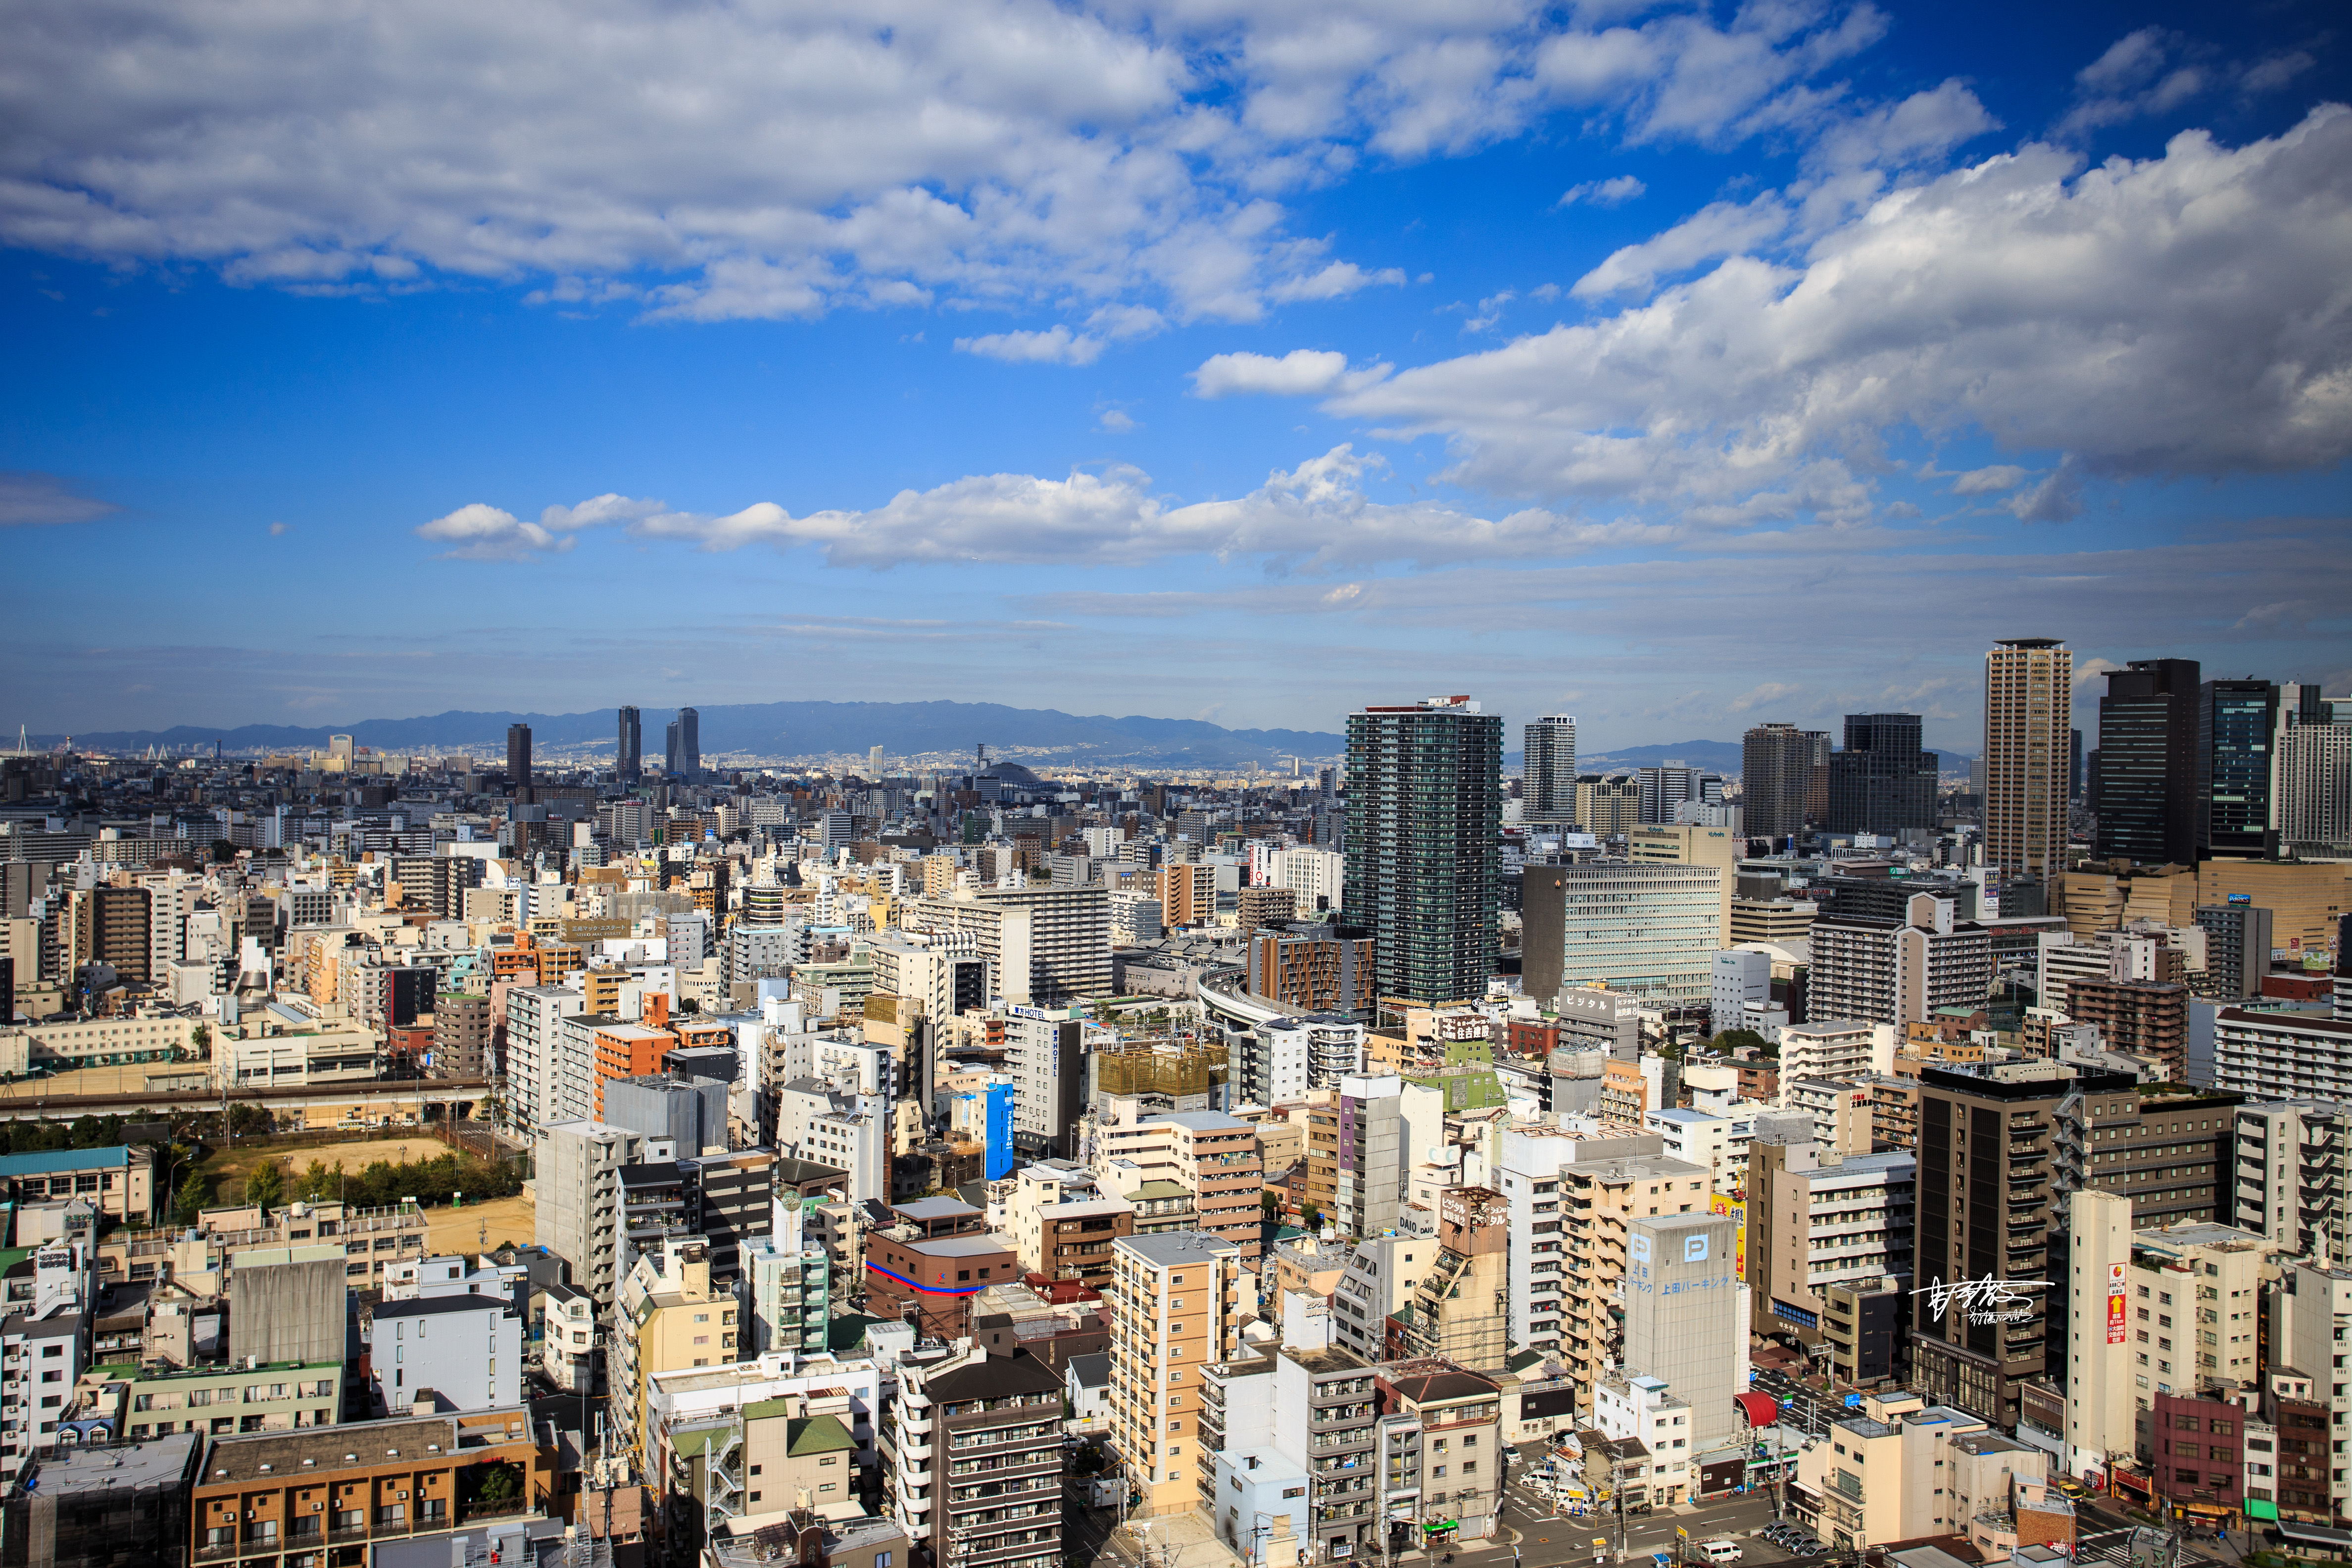 从展望台可以眺望到脚下的新世界和天王寺公园,大阪市的景色.